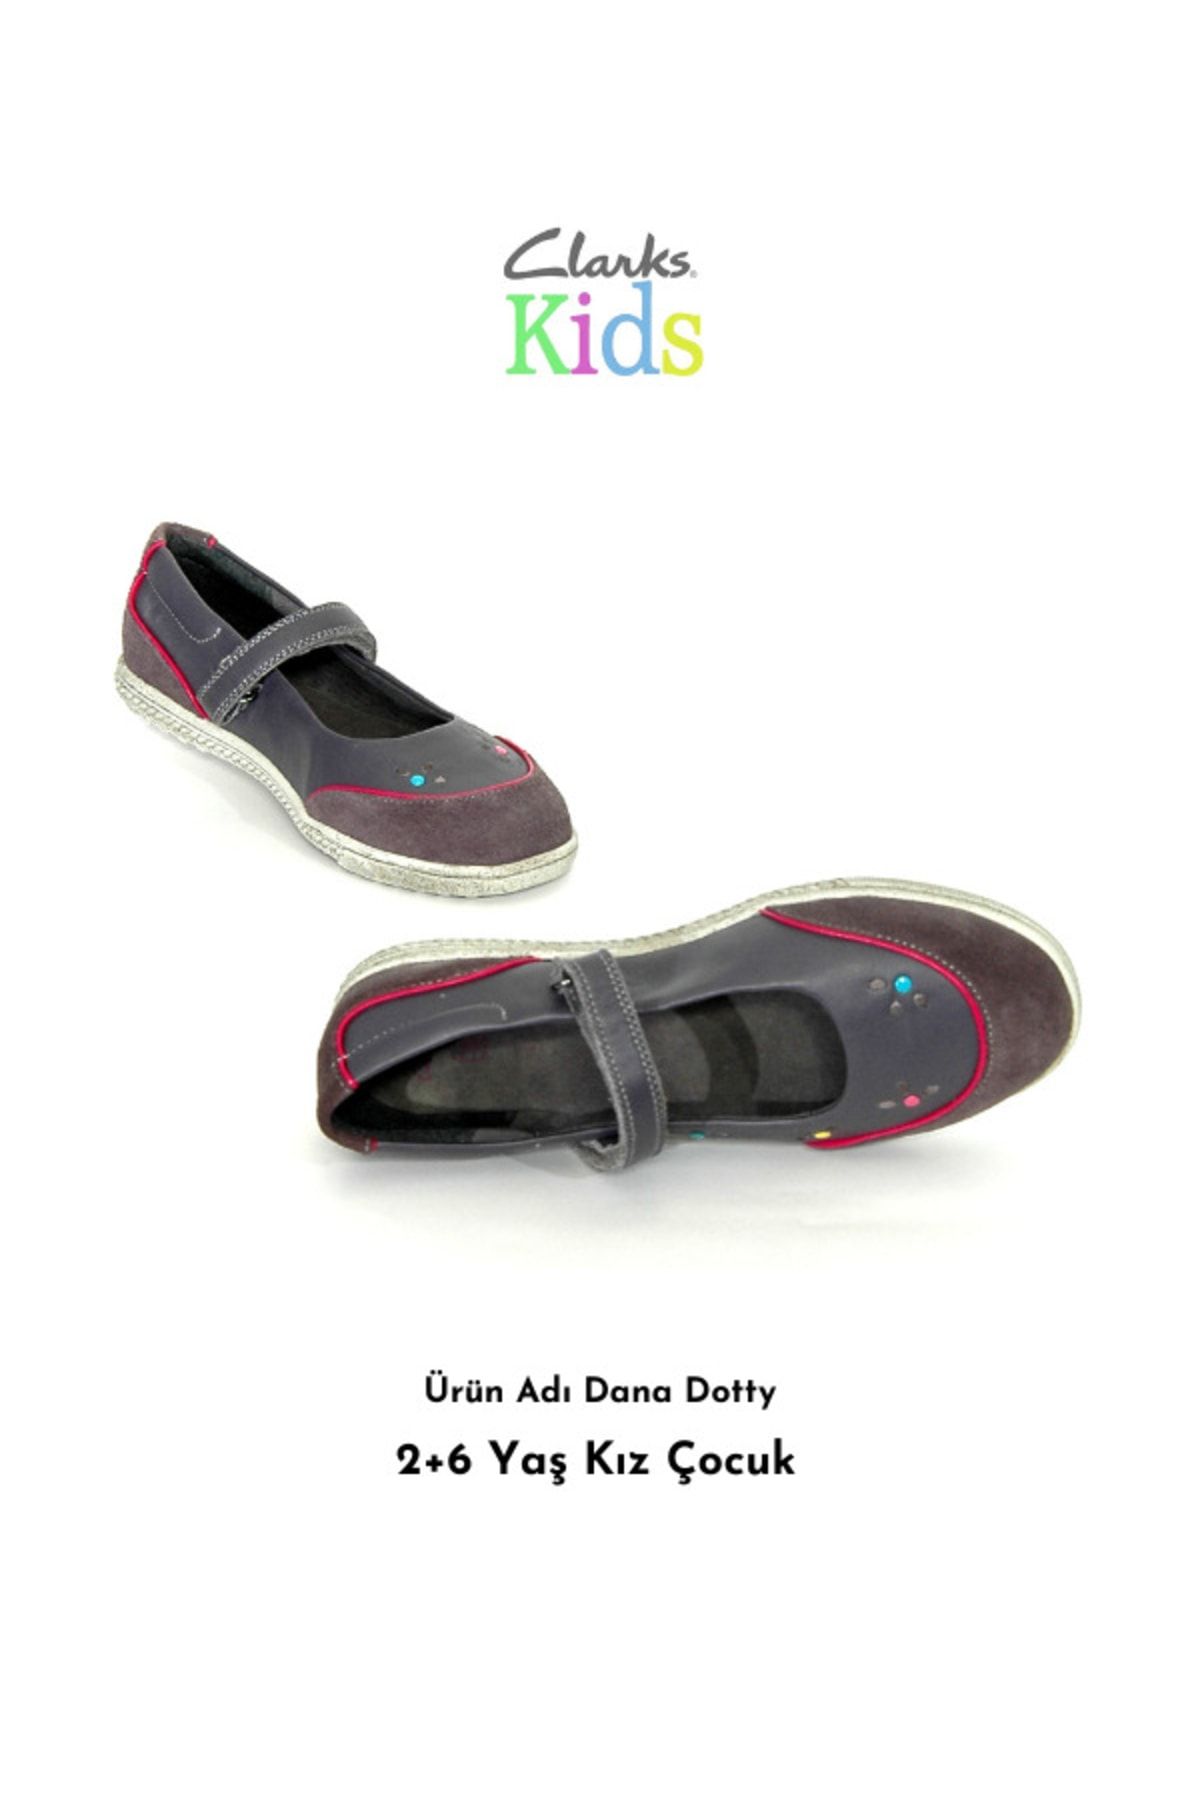 CLARKS Kız Dotty Mary Jane Ayakkabı Deri Garni 2+6 Yaş | 52%'YE KADAR İNDİRİM | marketingscoops.net